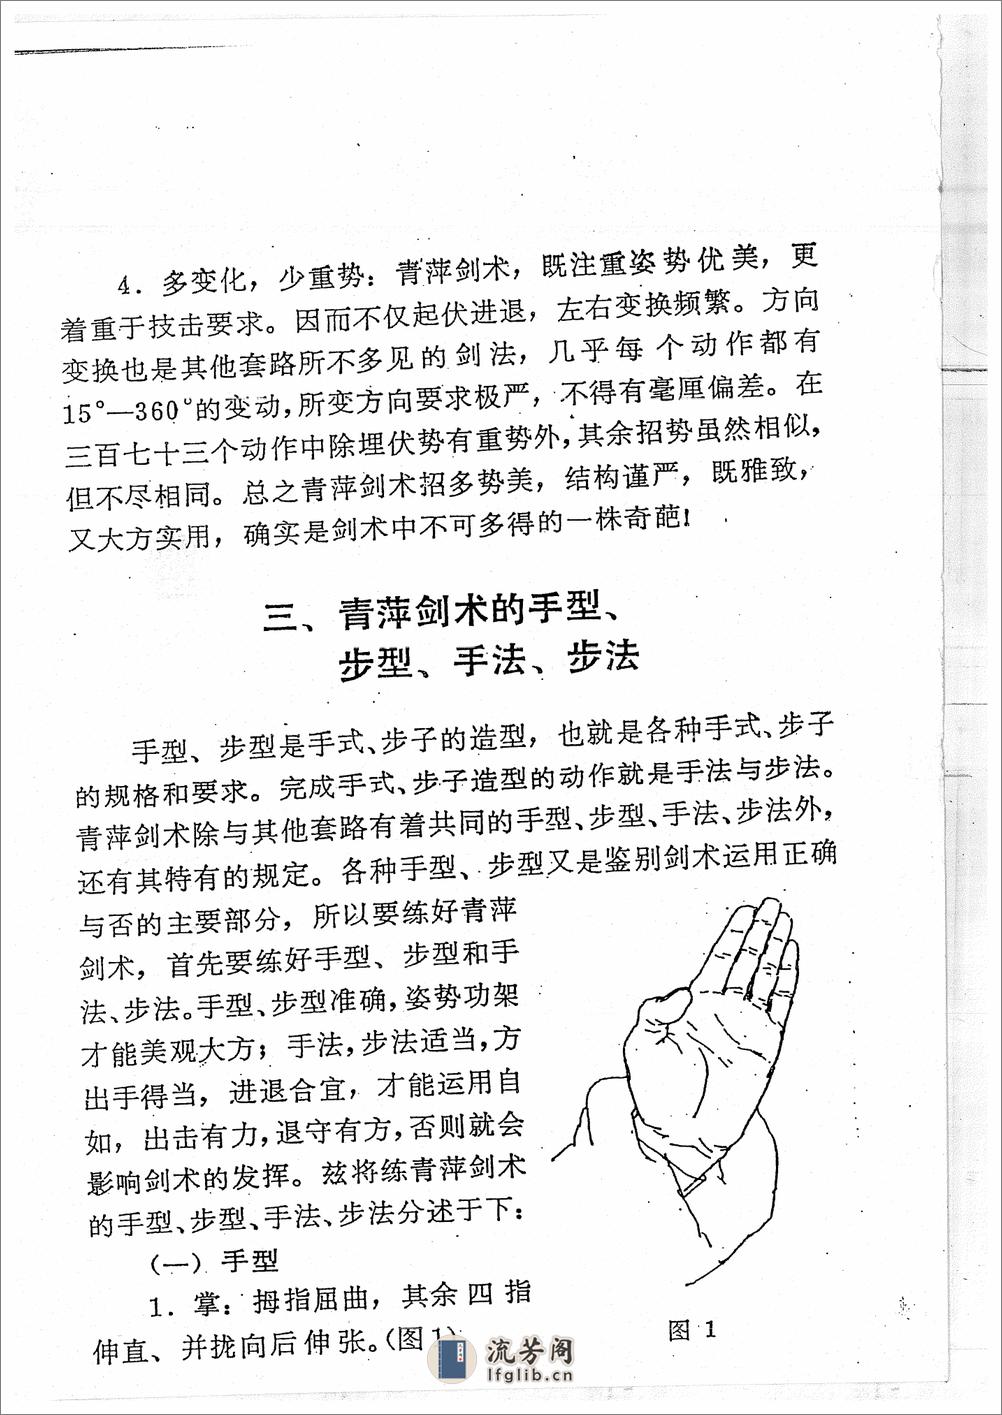 《青萍剑》贾勃生、刘滋茂 - 第8页预览图